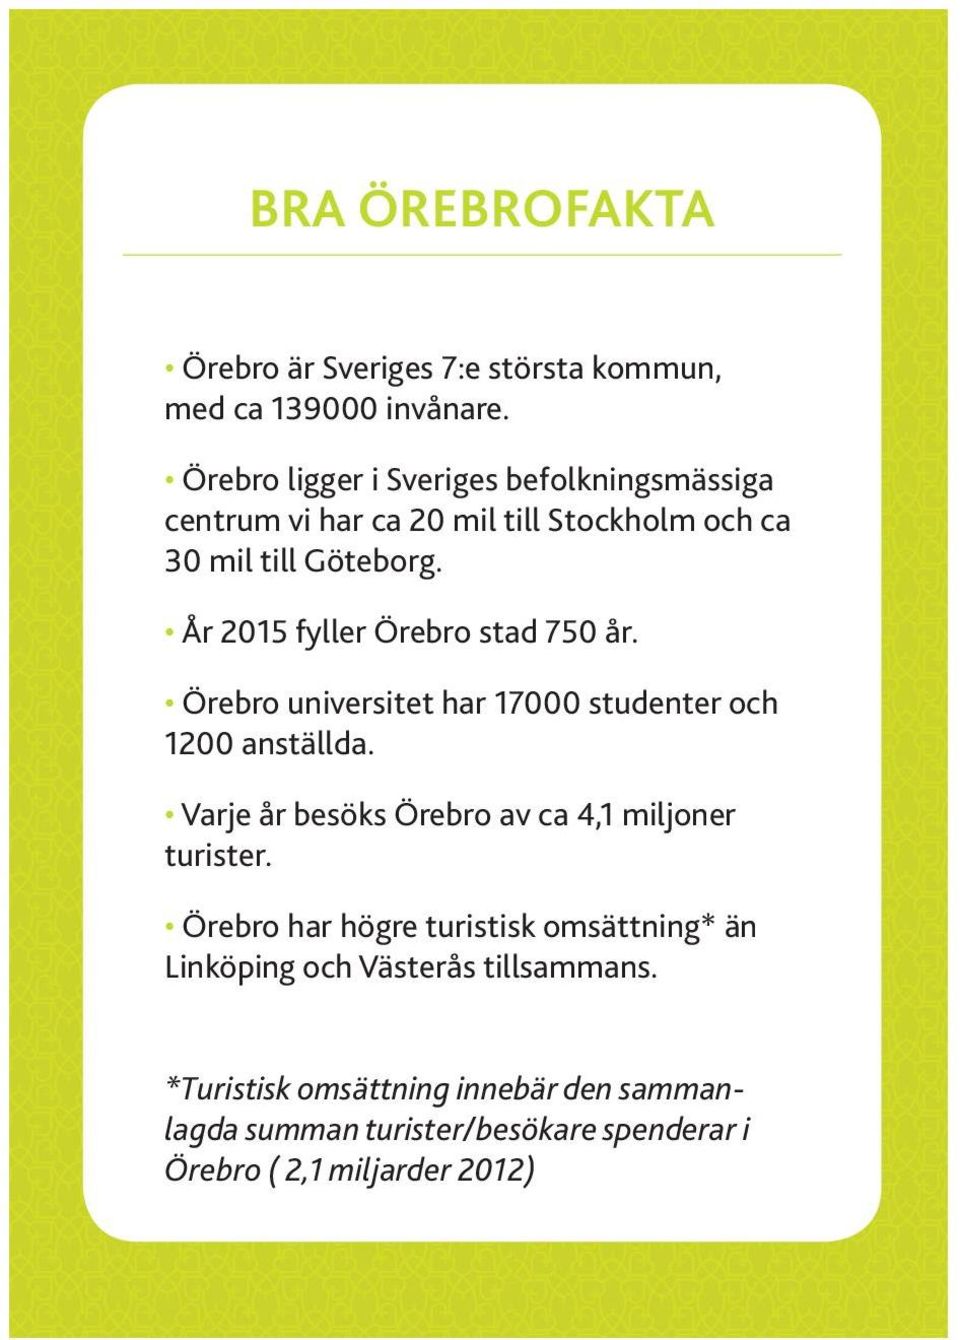 År 2015 fyller Örebro stad 750 år. Örebro universitet har 17000 studenter och 1200 anställda.